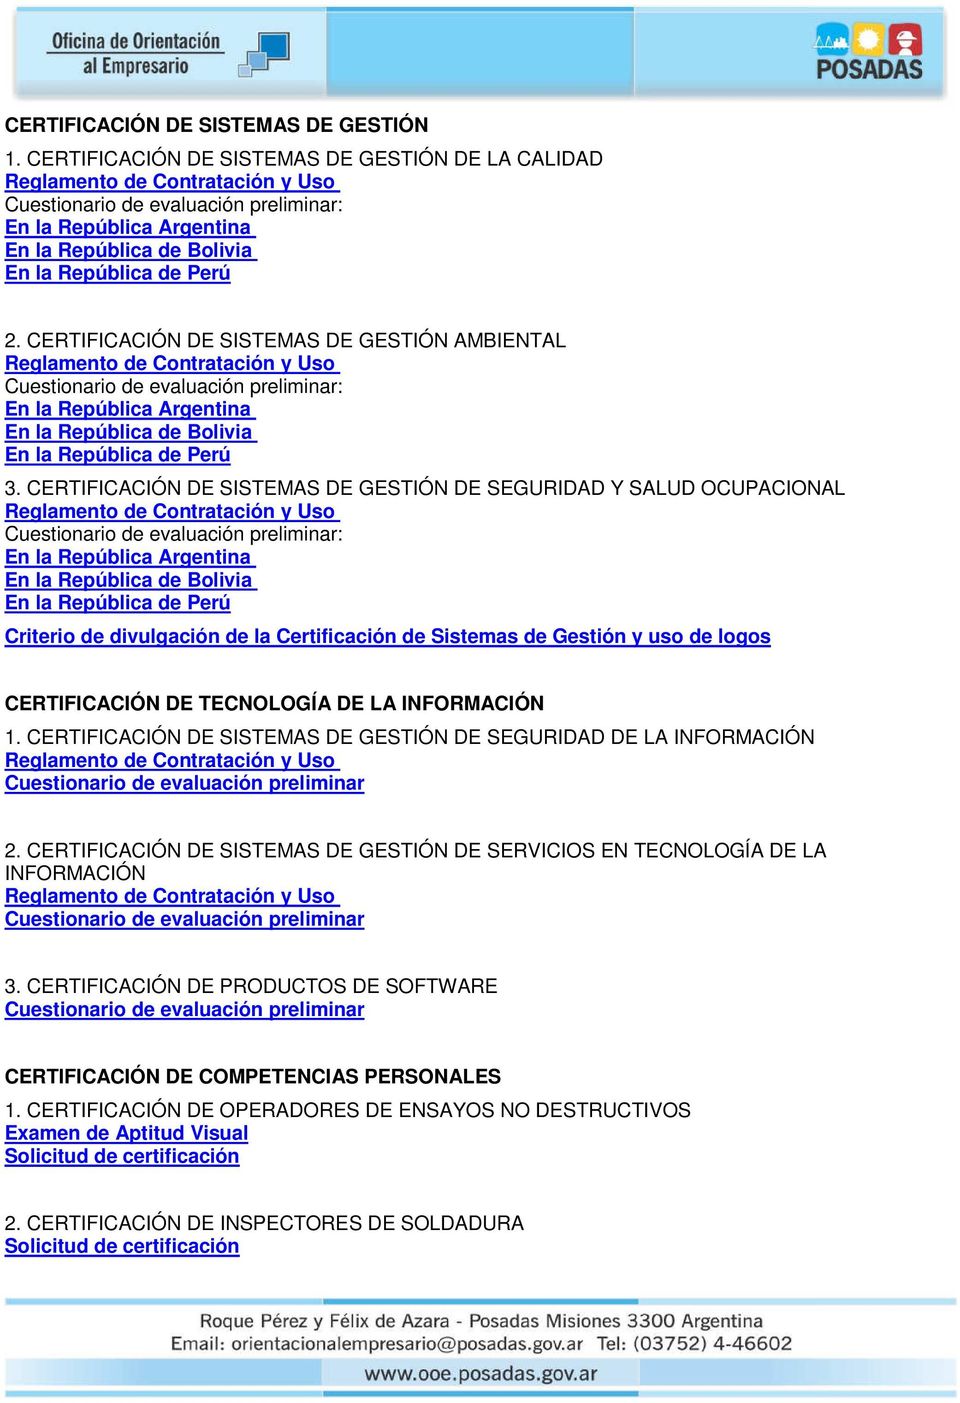 CERTIFICACIÓN DE SISTEMAS DE GESTIÓN DE SEGURIDAD Y SALUD OCUPACIONAL : En la República Argentina En la República de Bolivia En la República de Perú Criterio de divulgación de la Certificación de